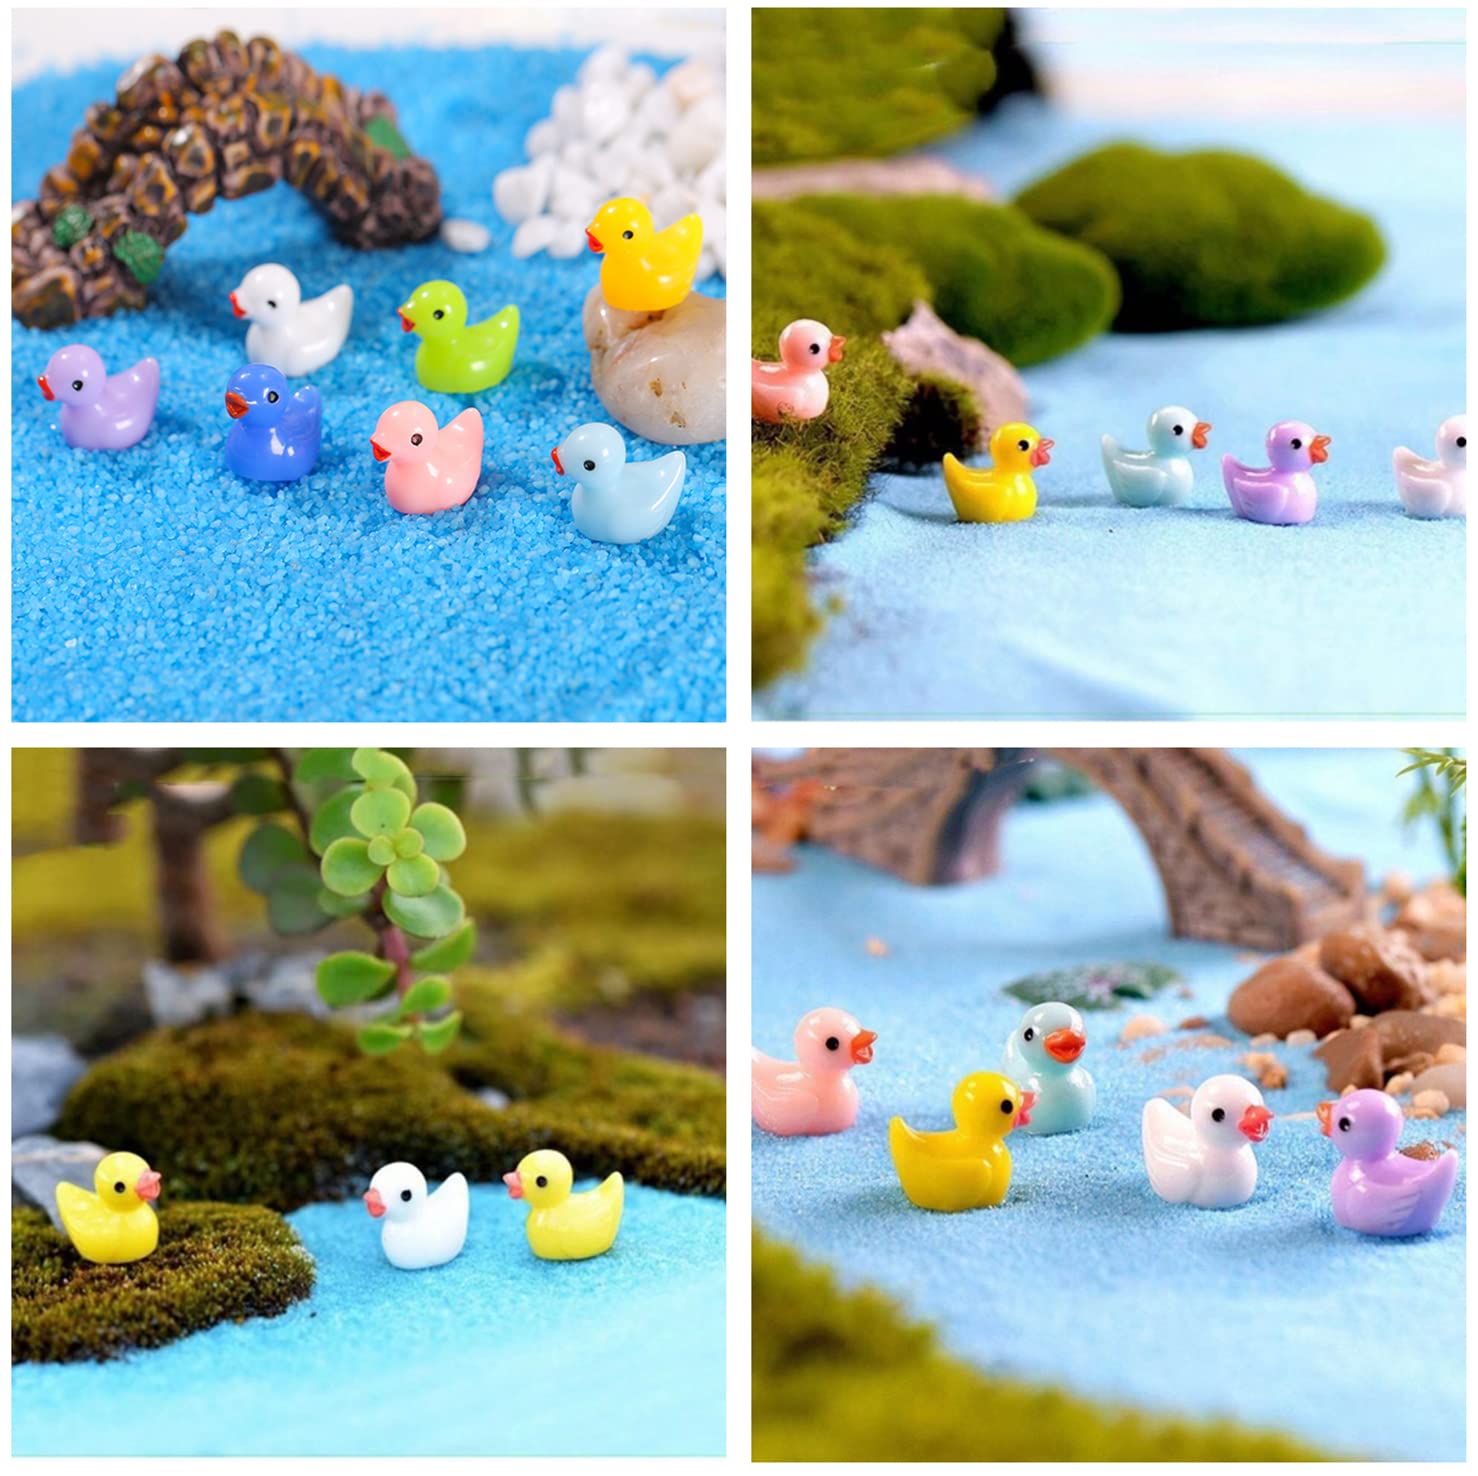 Honiweer 80 Pieces Mini Ducks, 8 Colors Miniature Figures Micro Fairy Garden Landscape Aquarium Dollhouse Ornament Potted Plants Decoration DIY Slime Charms for Christmas Accessories